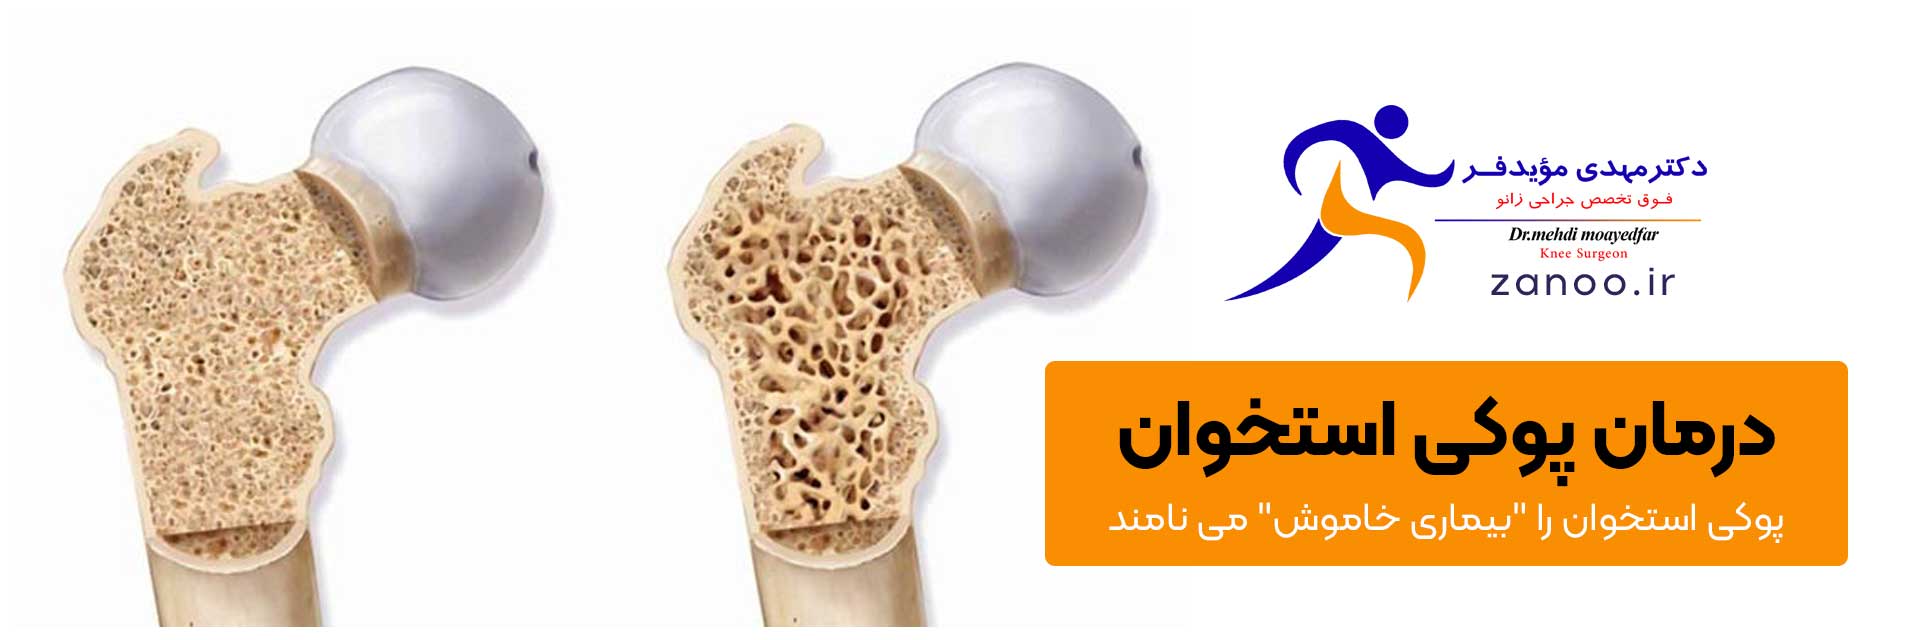 Osteoporosis، درمان پوکی استخوان در اصفهان،  نام دیگر پوکی استخوان بیماری خاموش است، بهترین دکتر جراحی رباط صلیبی زانو در اصفهان، دکتر مویدفر جراح زانو در اصفهان